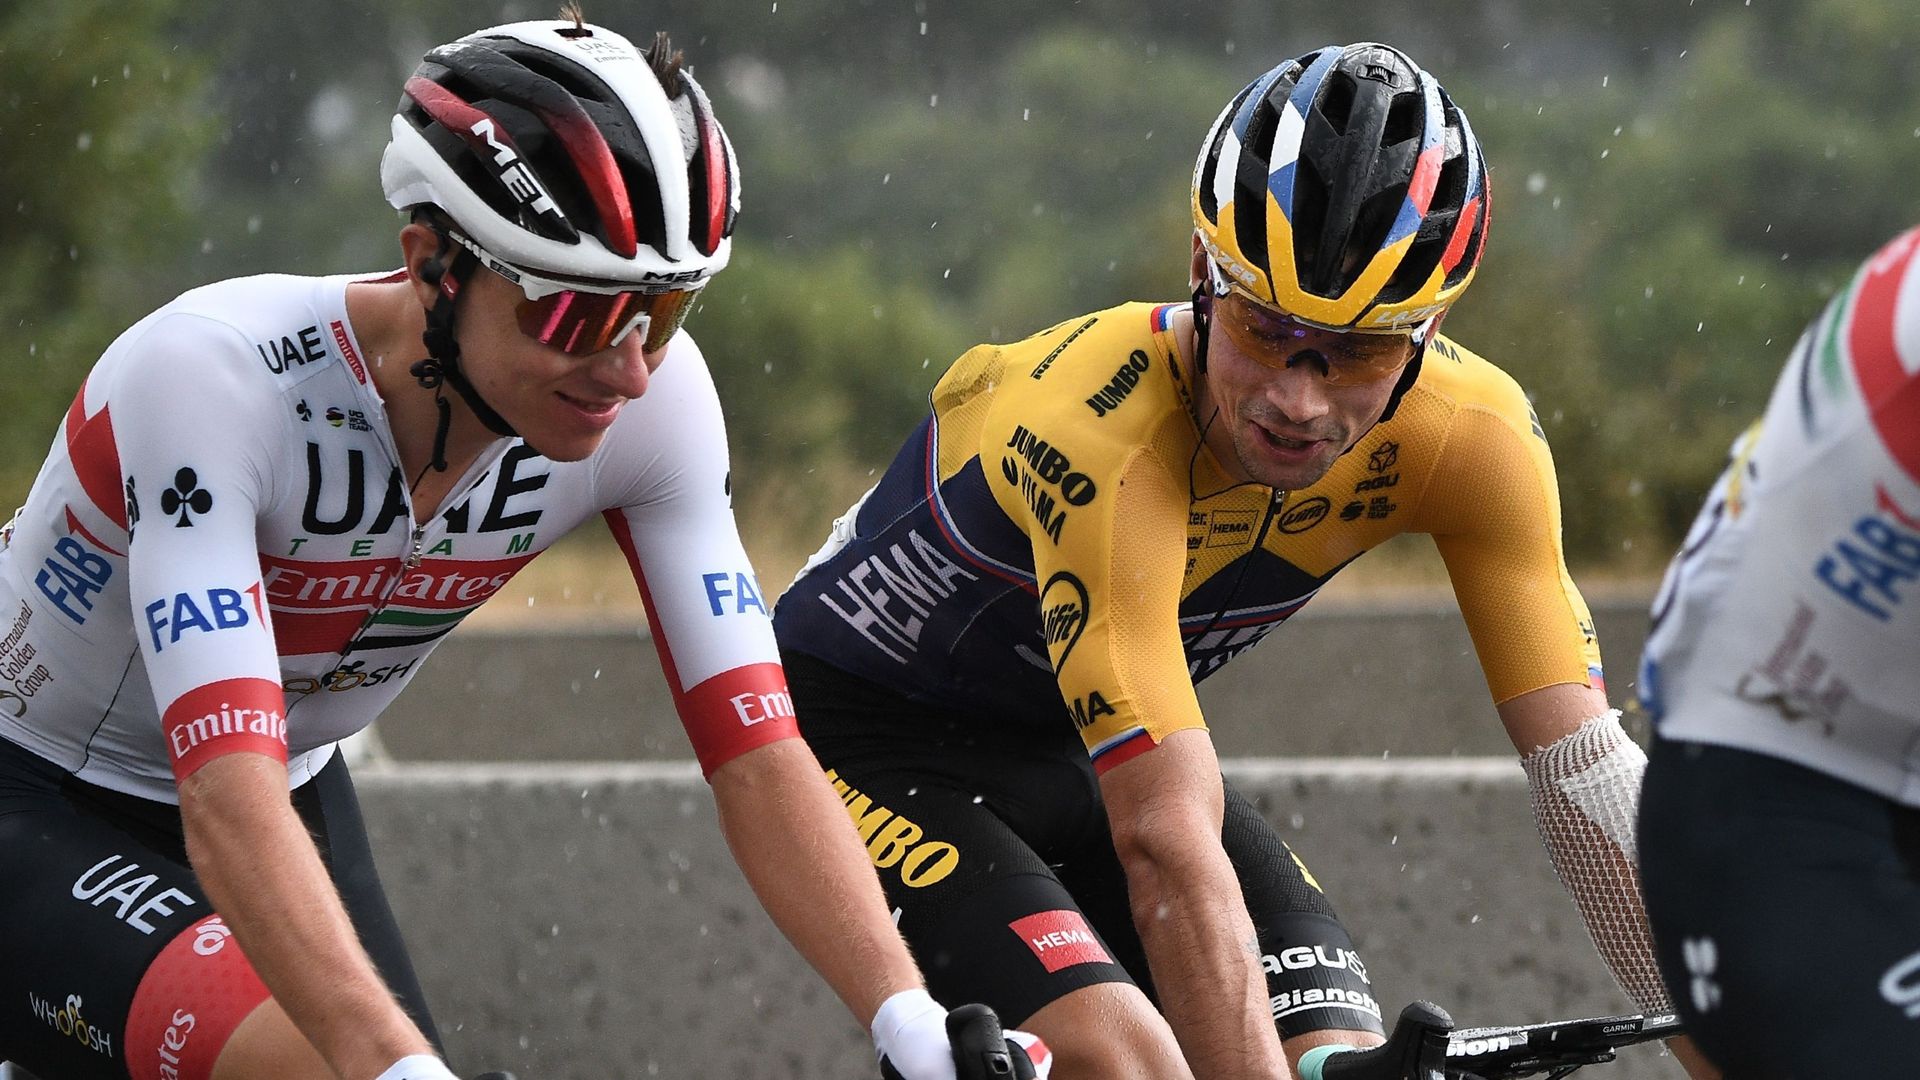 Tour de France: "Pogacar est peut-être le plus fort actuellement", estime Roglic